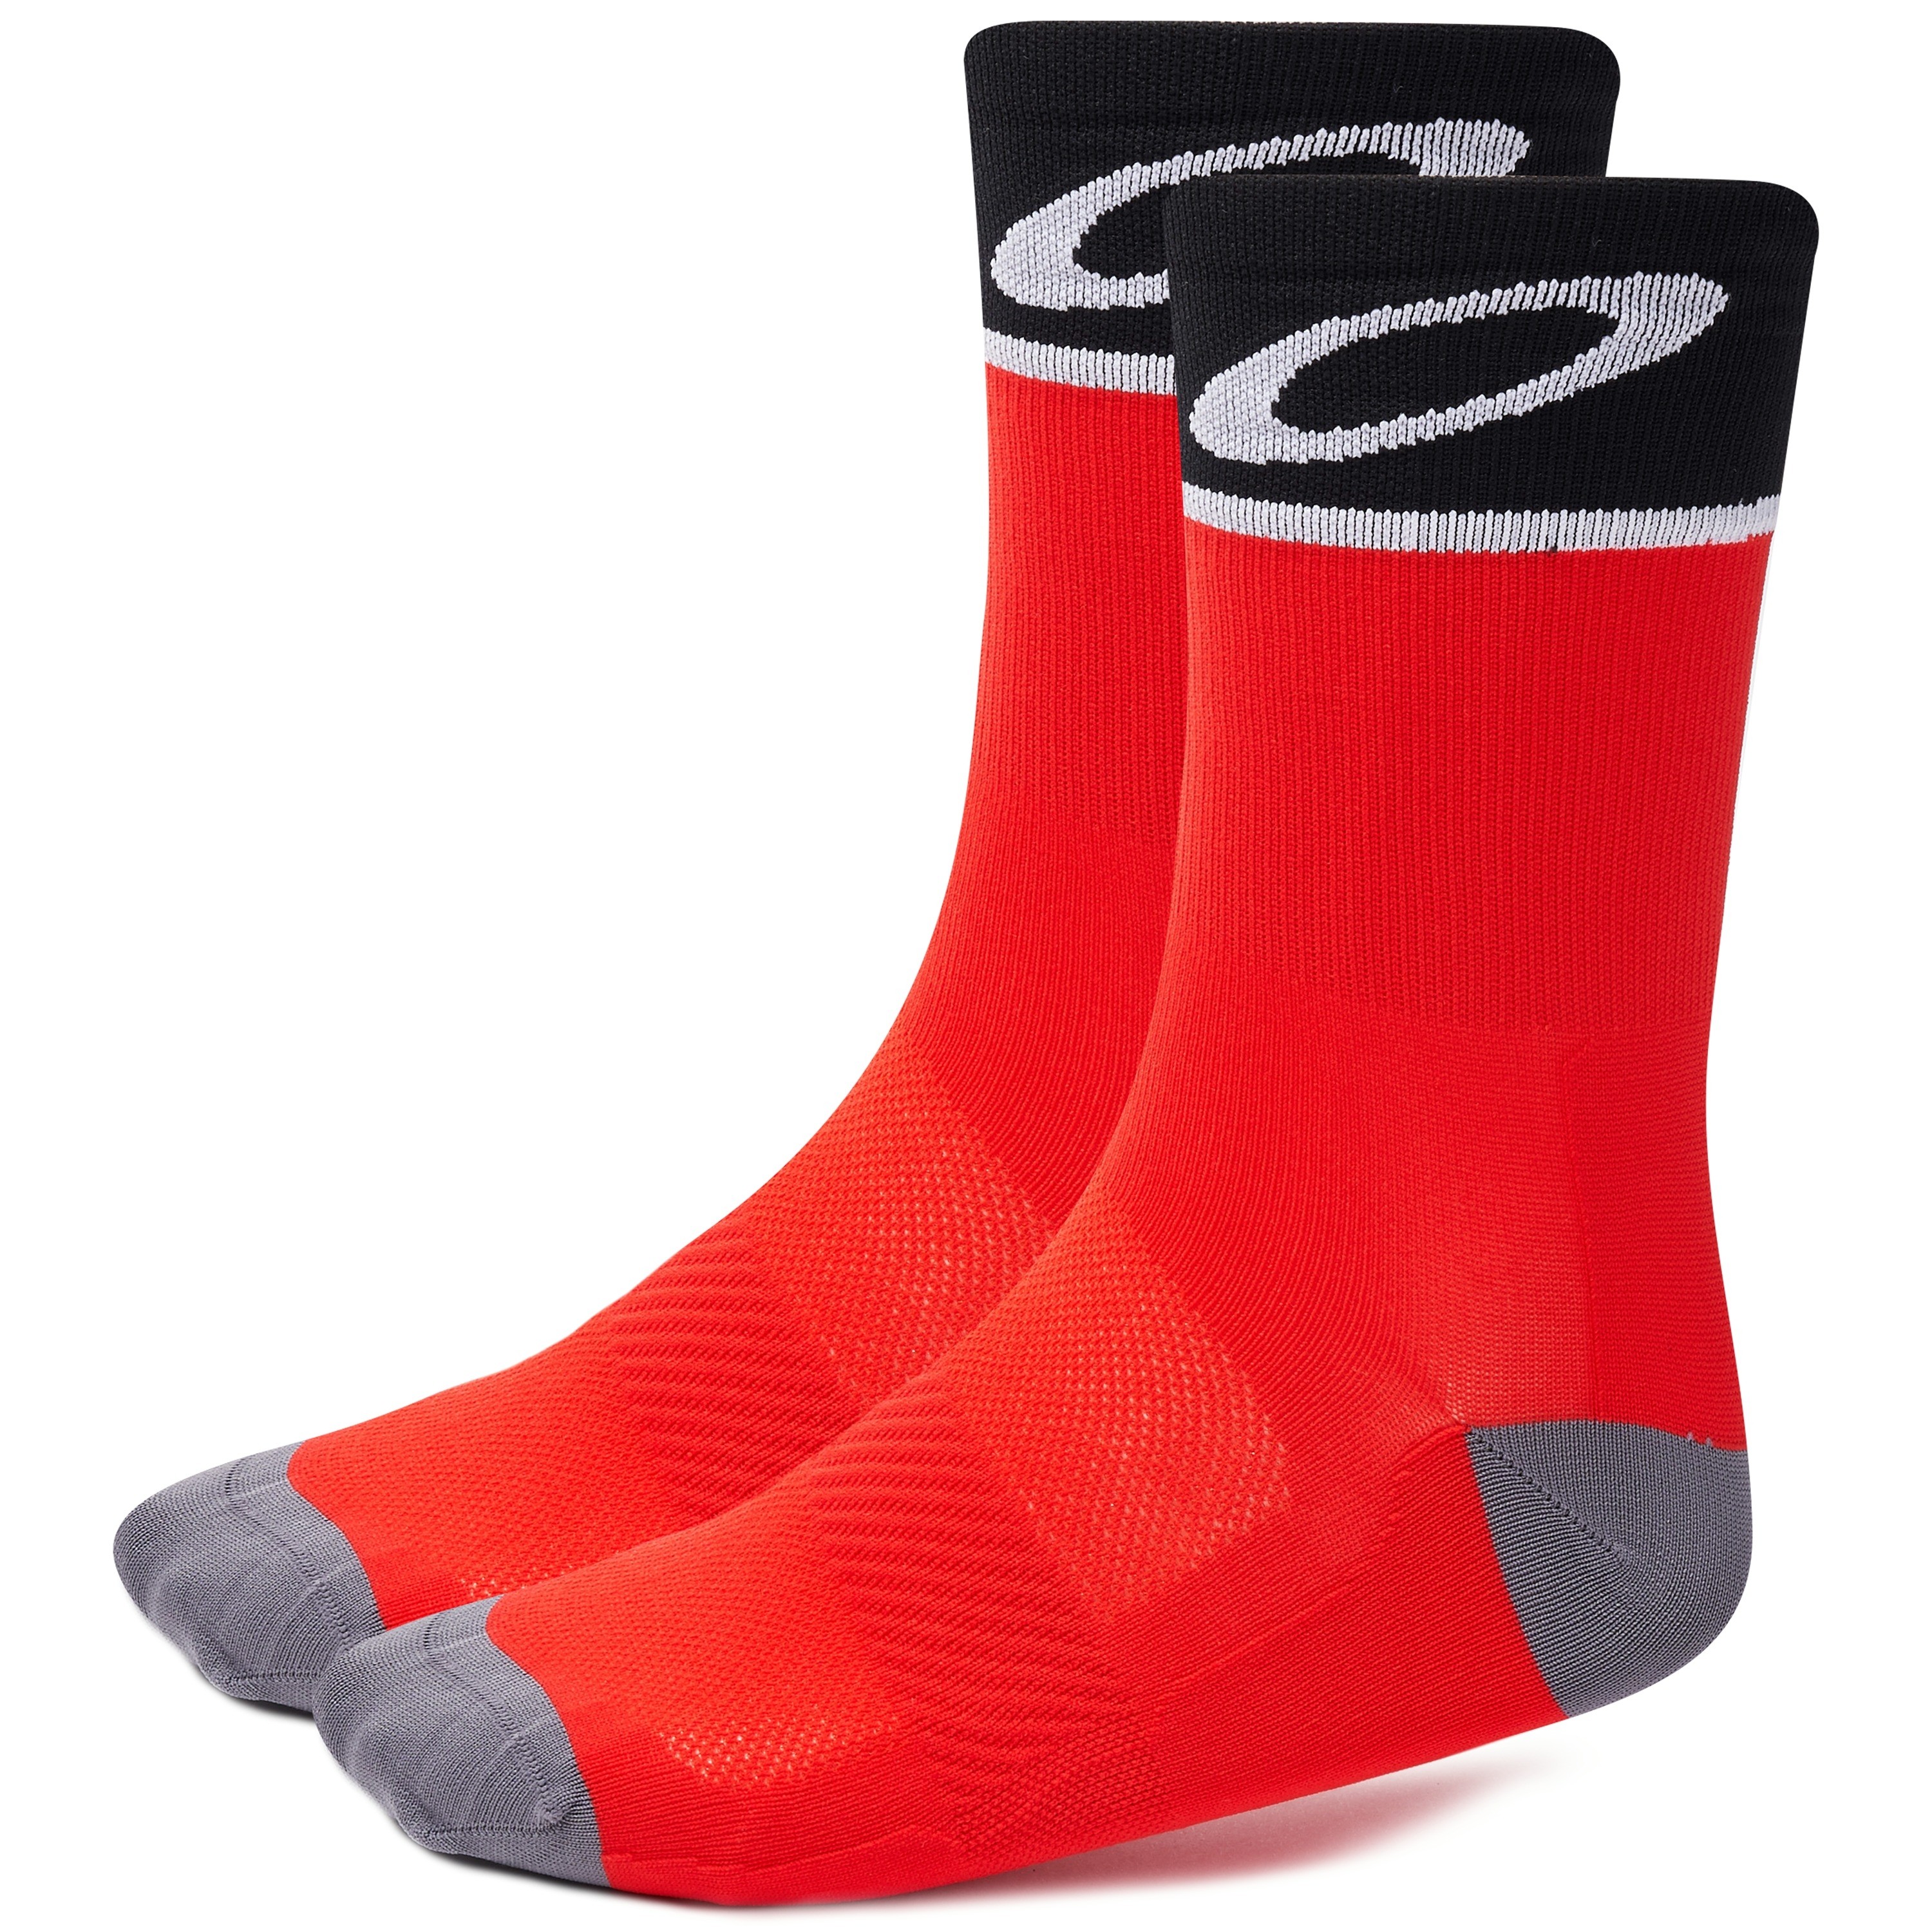 Oakley cycling chaussettes de cyclisme redline rouge